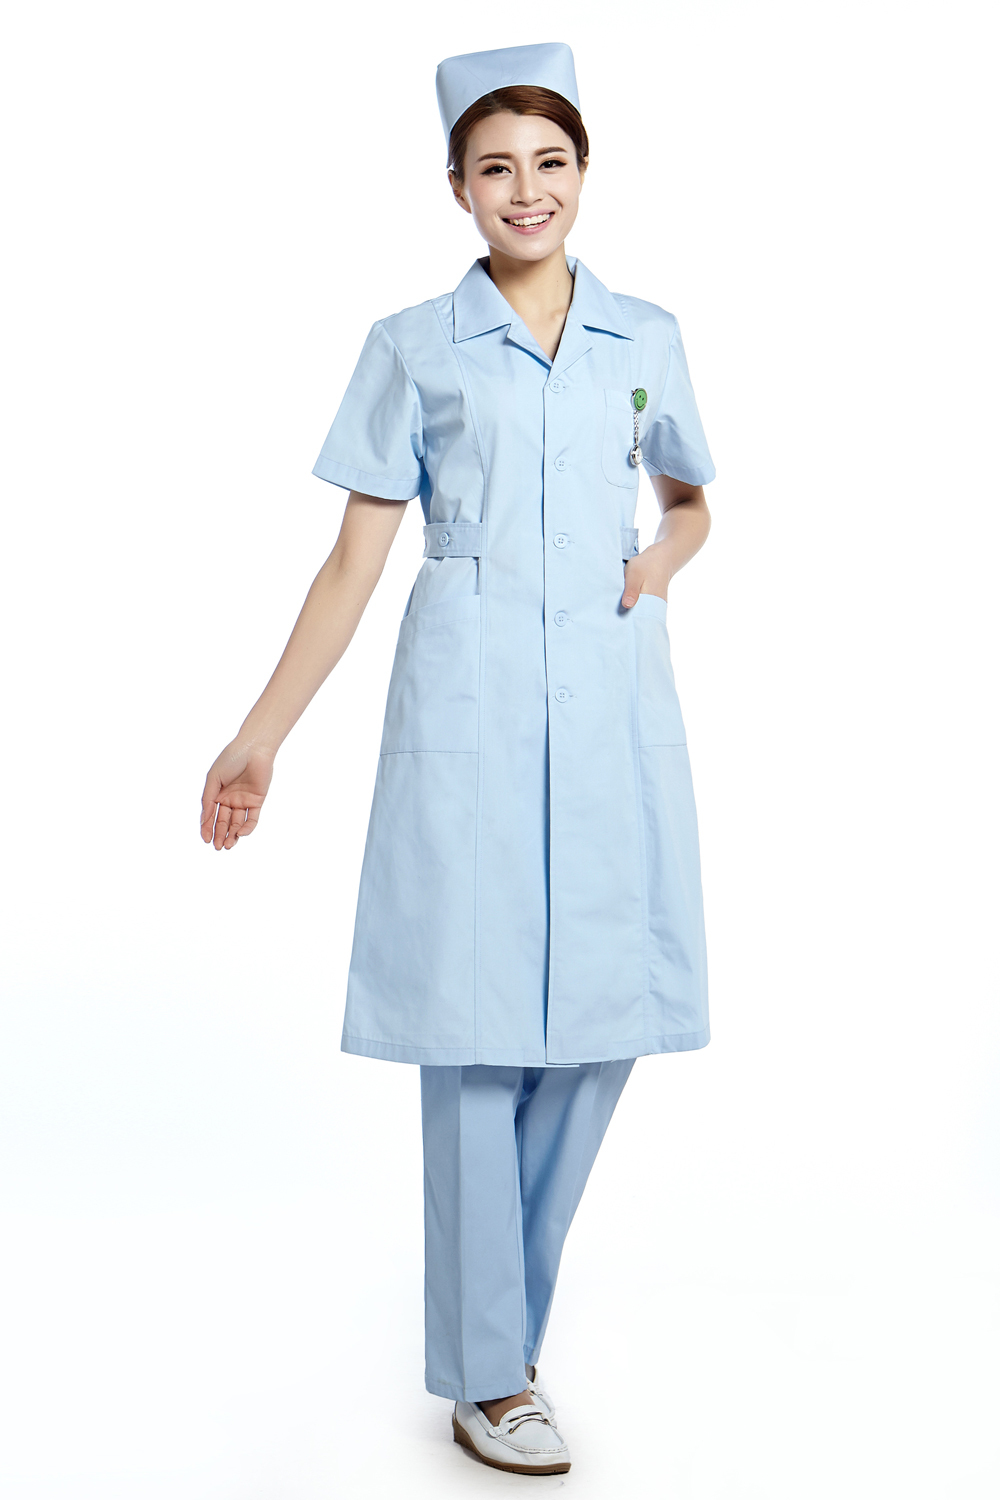 Nurse Uniform Pictures 15